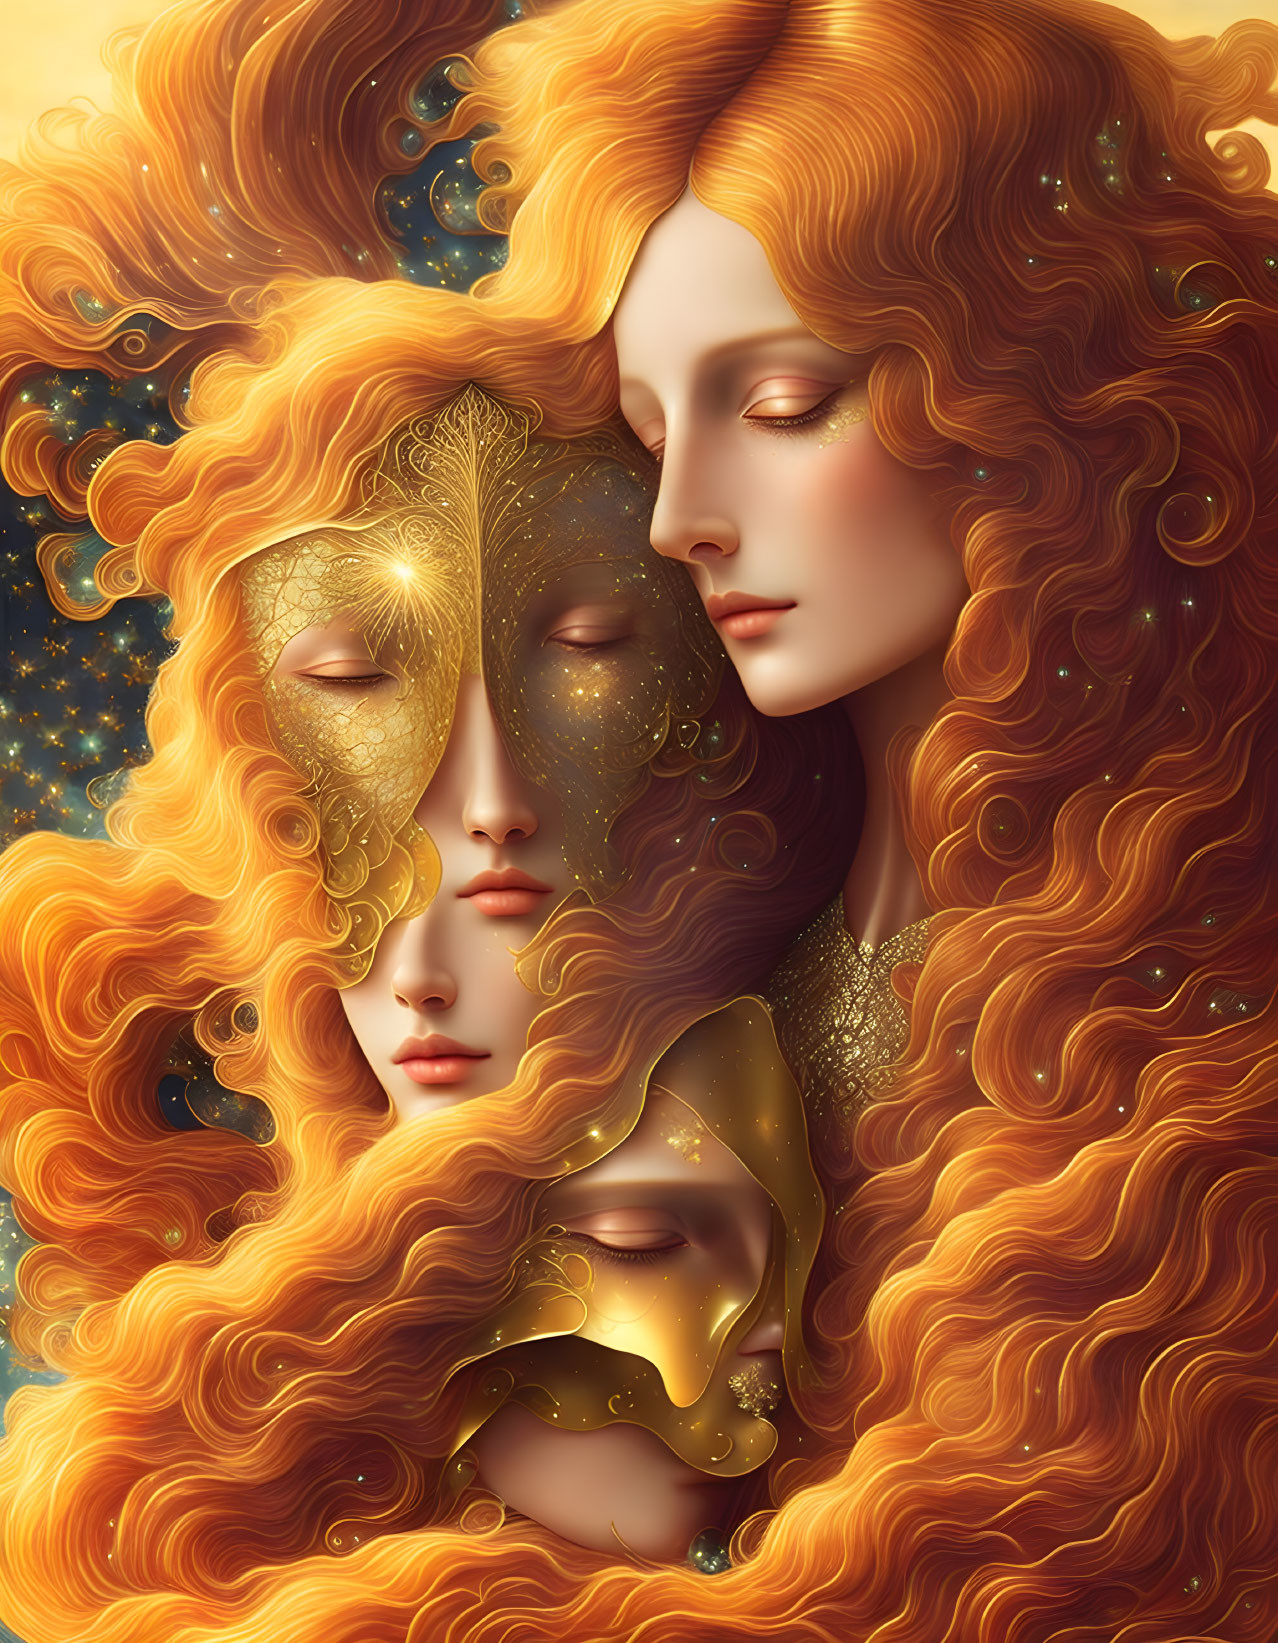 Multiple faces, golden masks